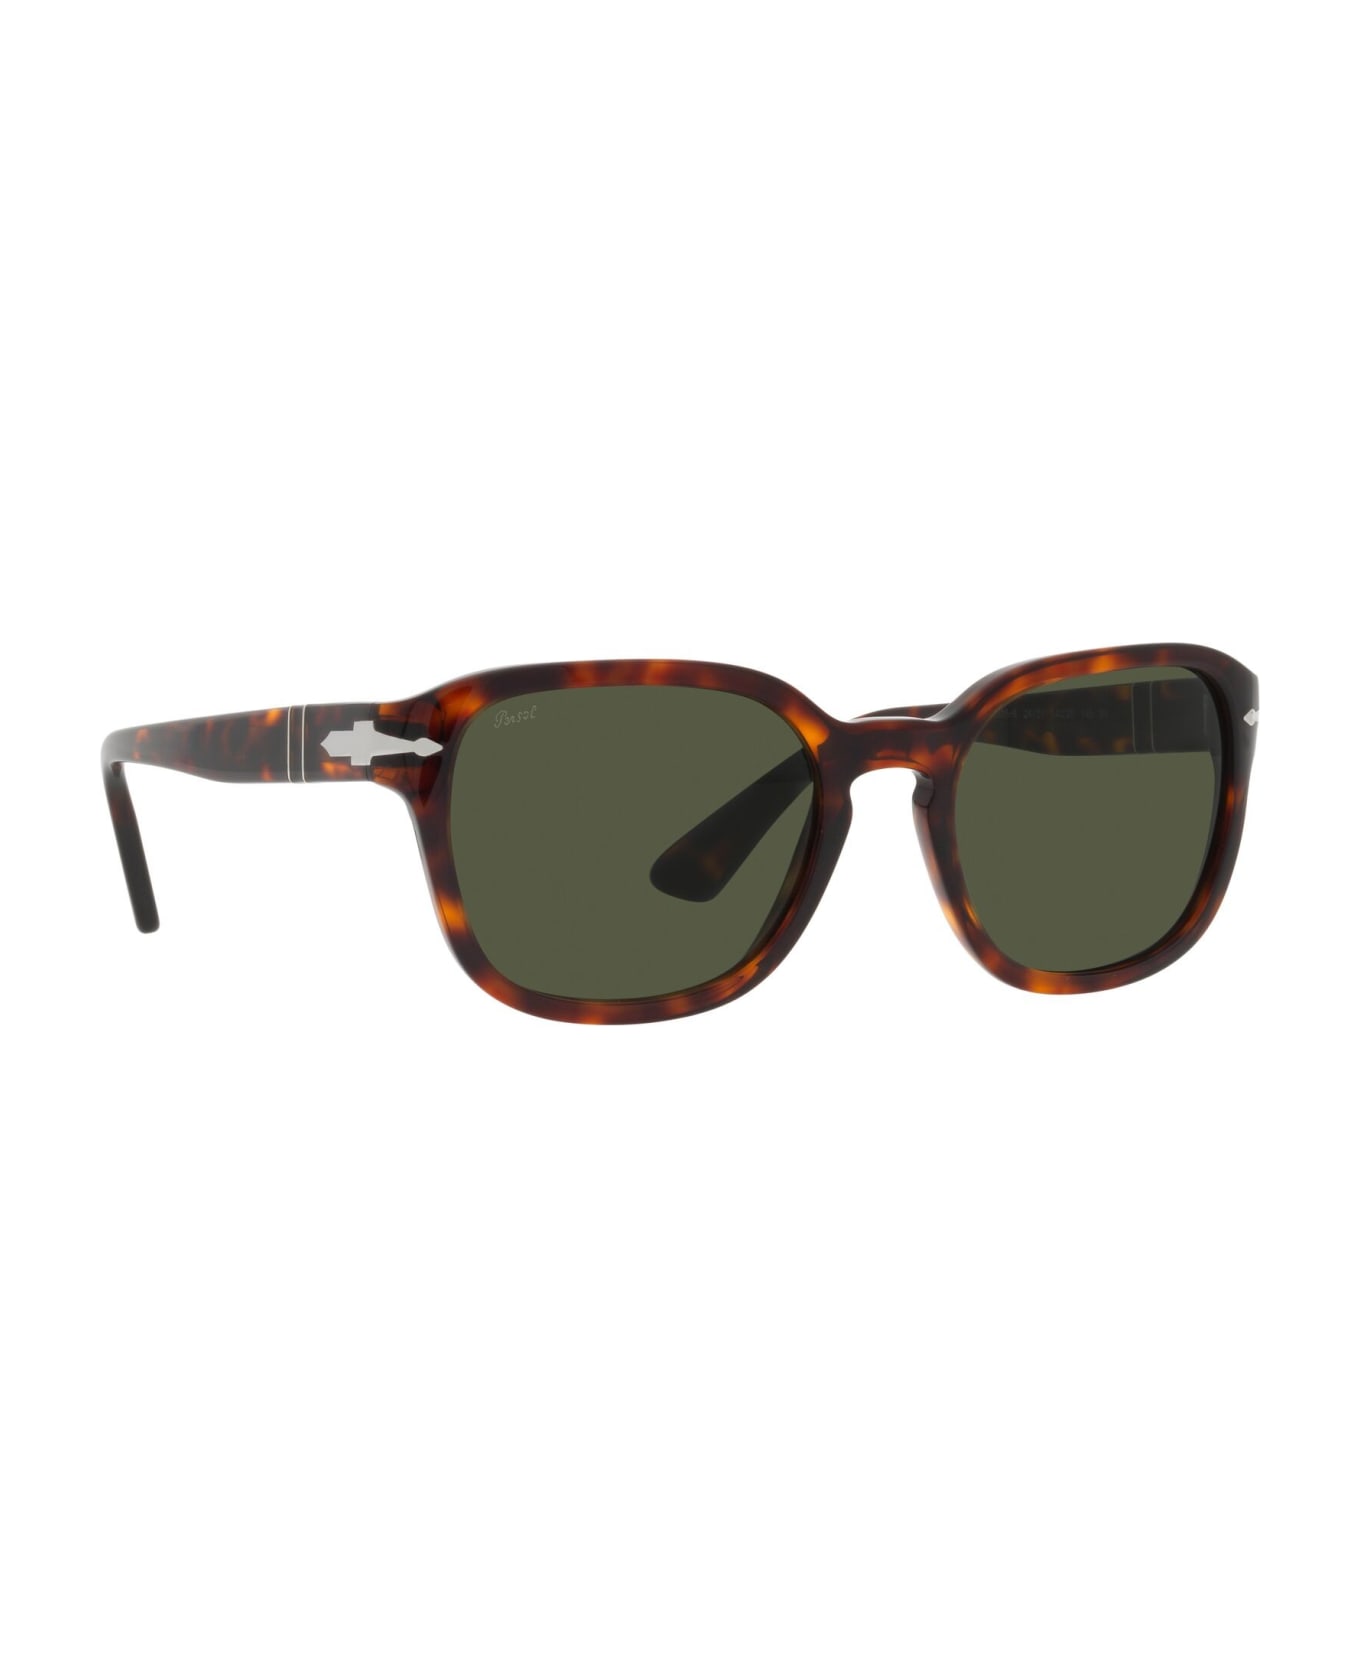 Persol Sunglasses - Marrone/Verde